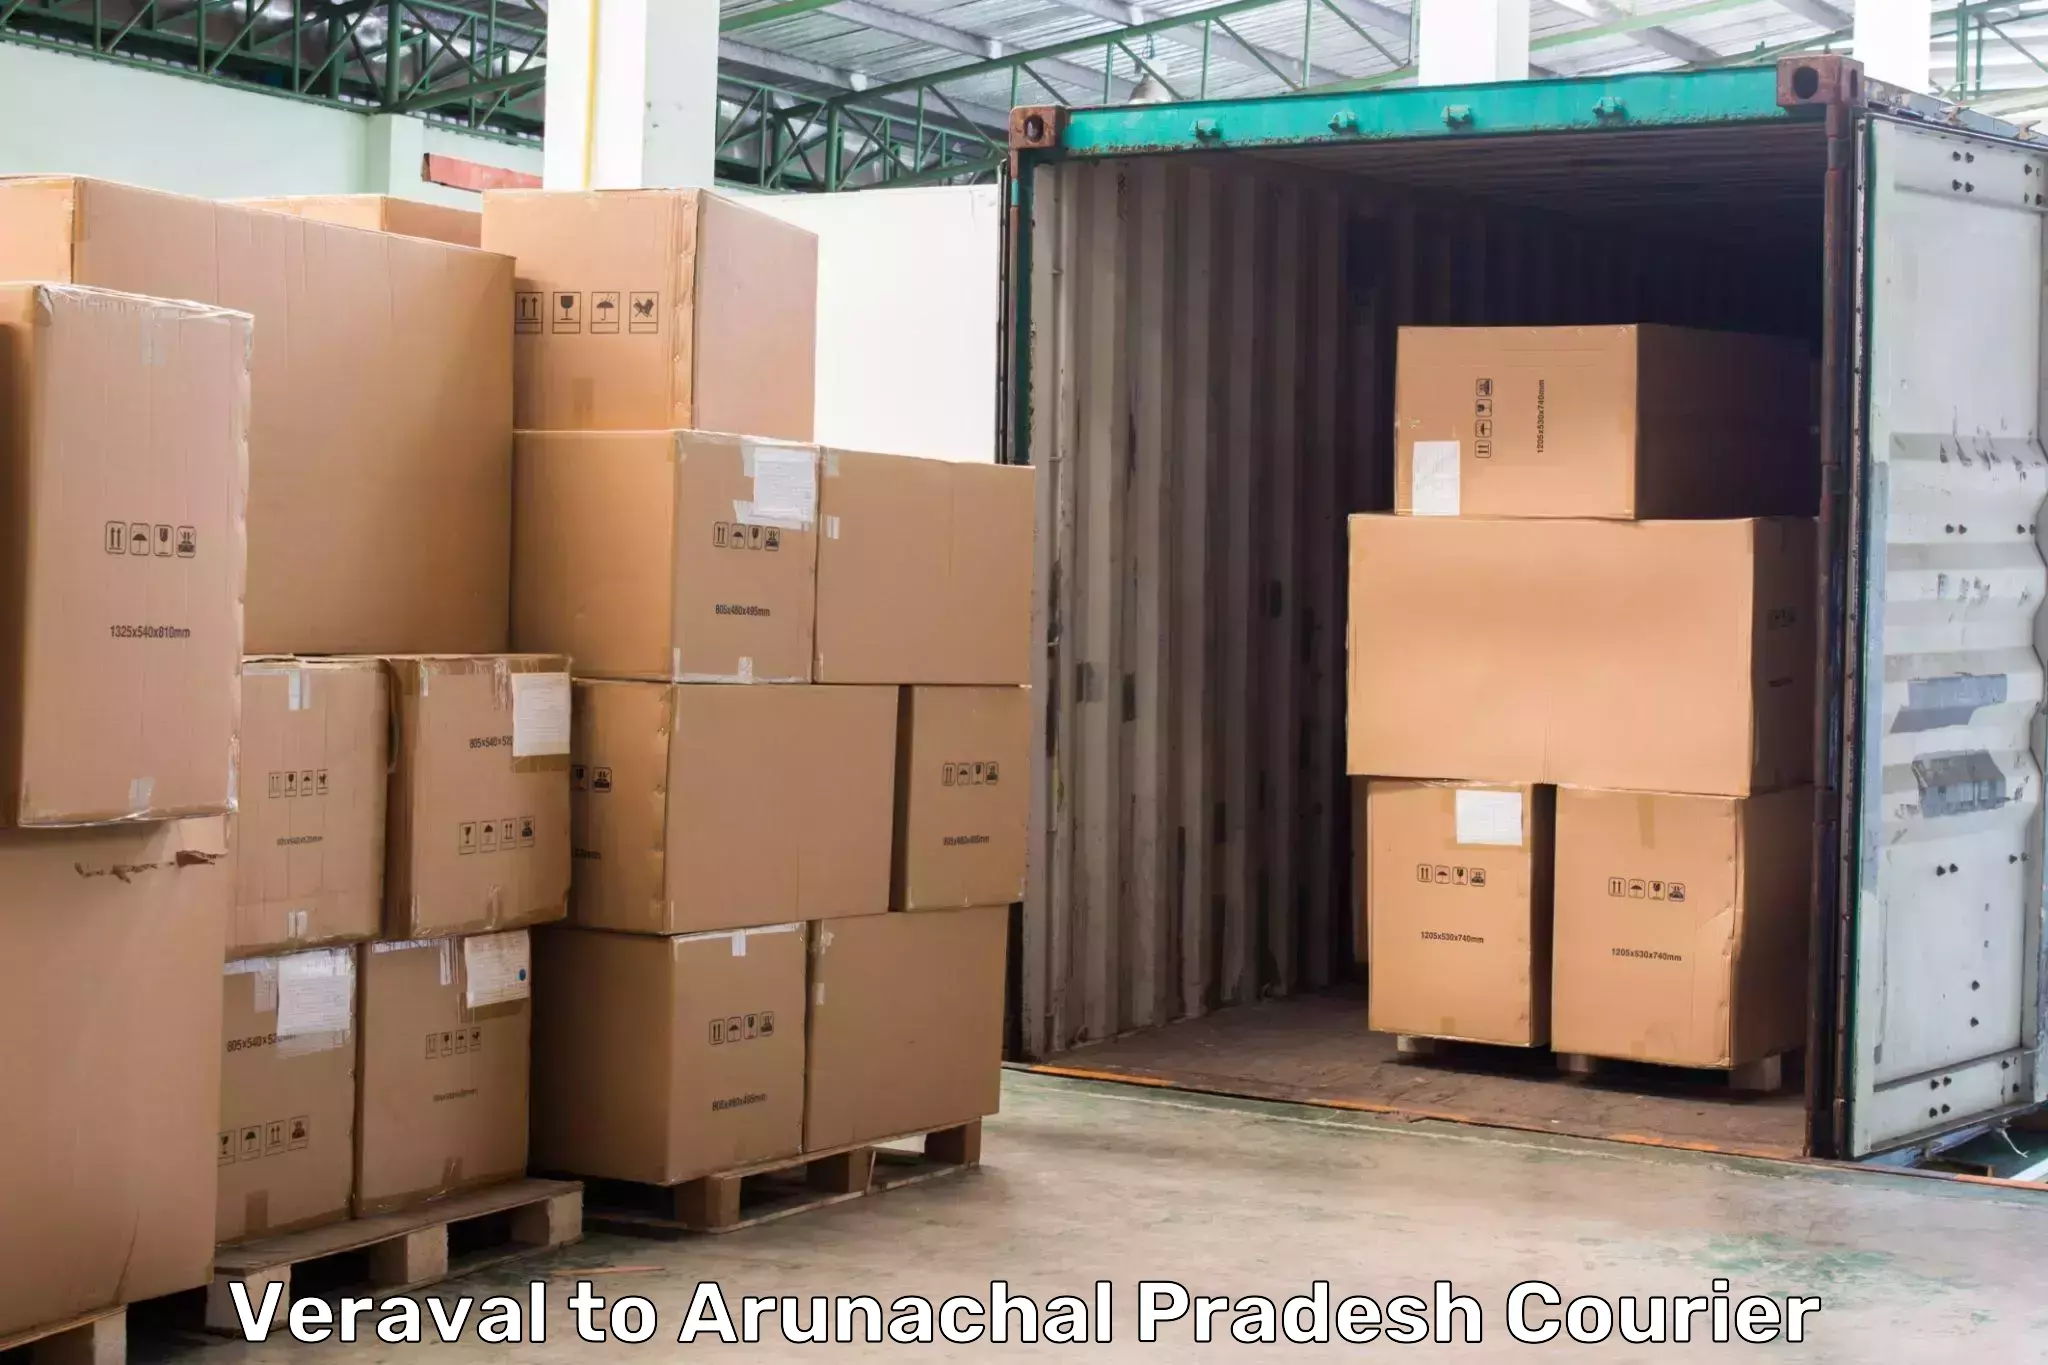 Affordable parcel service Veraval to Papum Pare